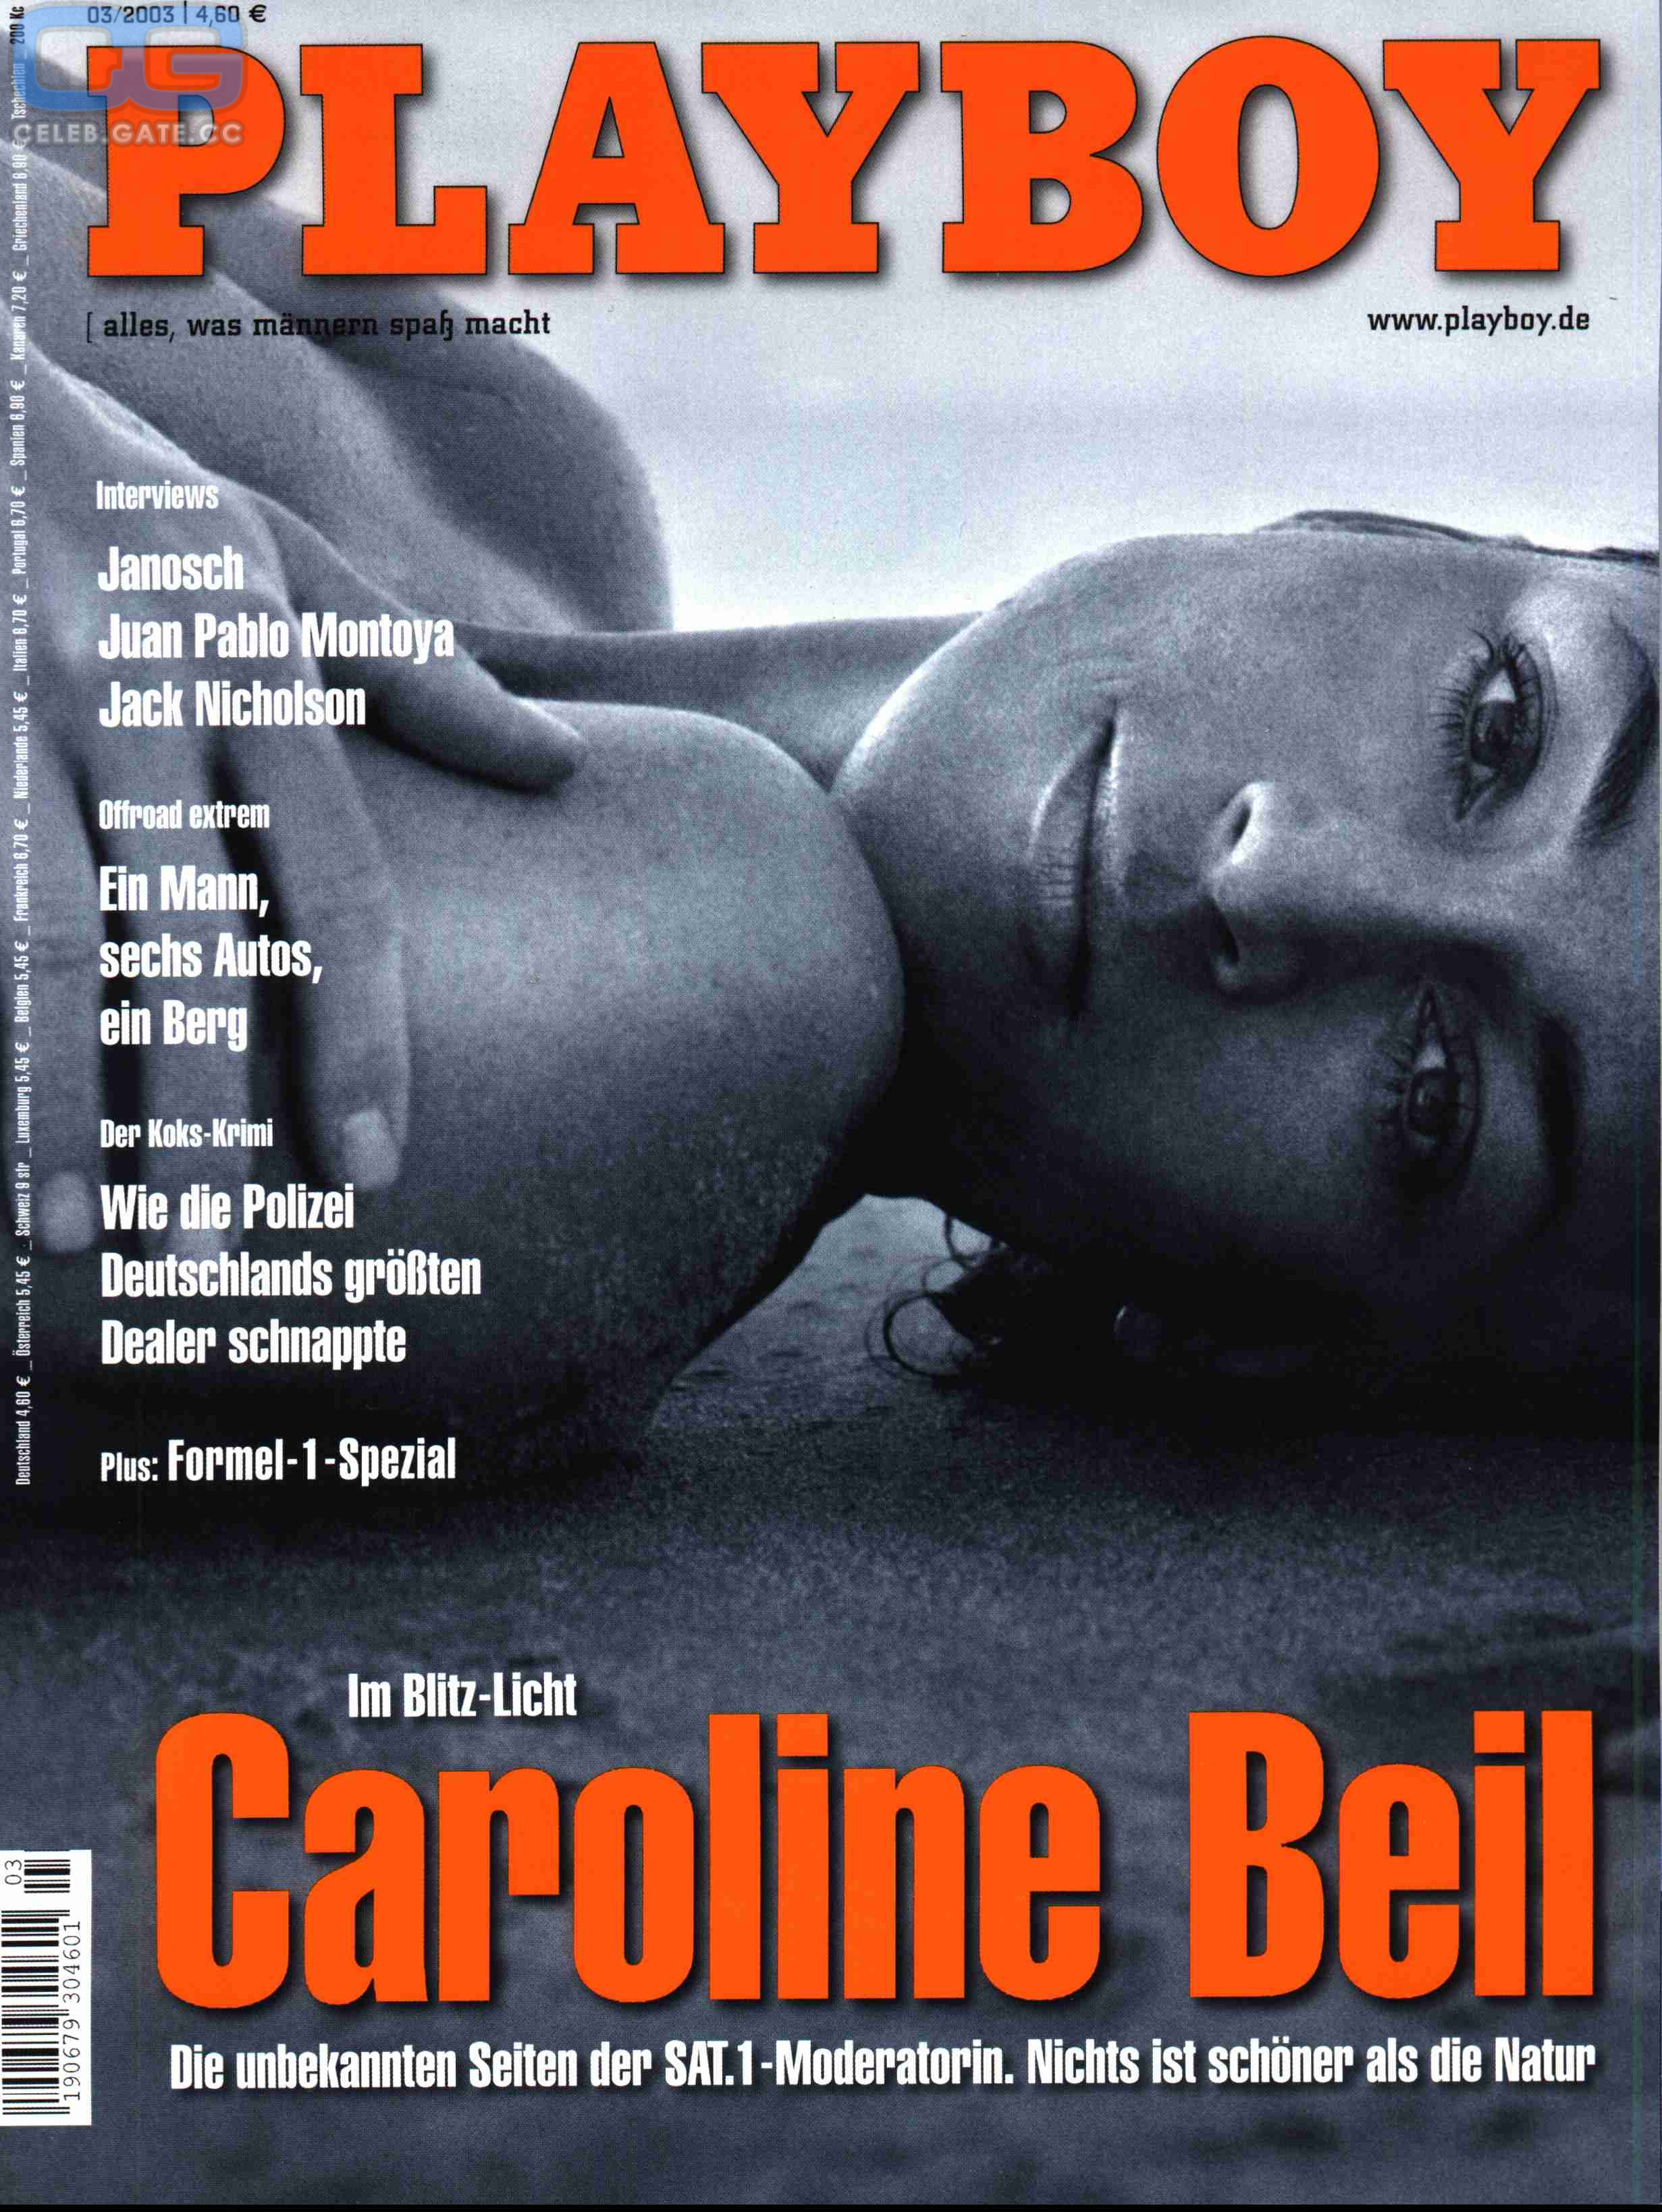 Caroline beil naked